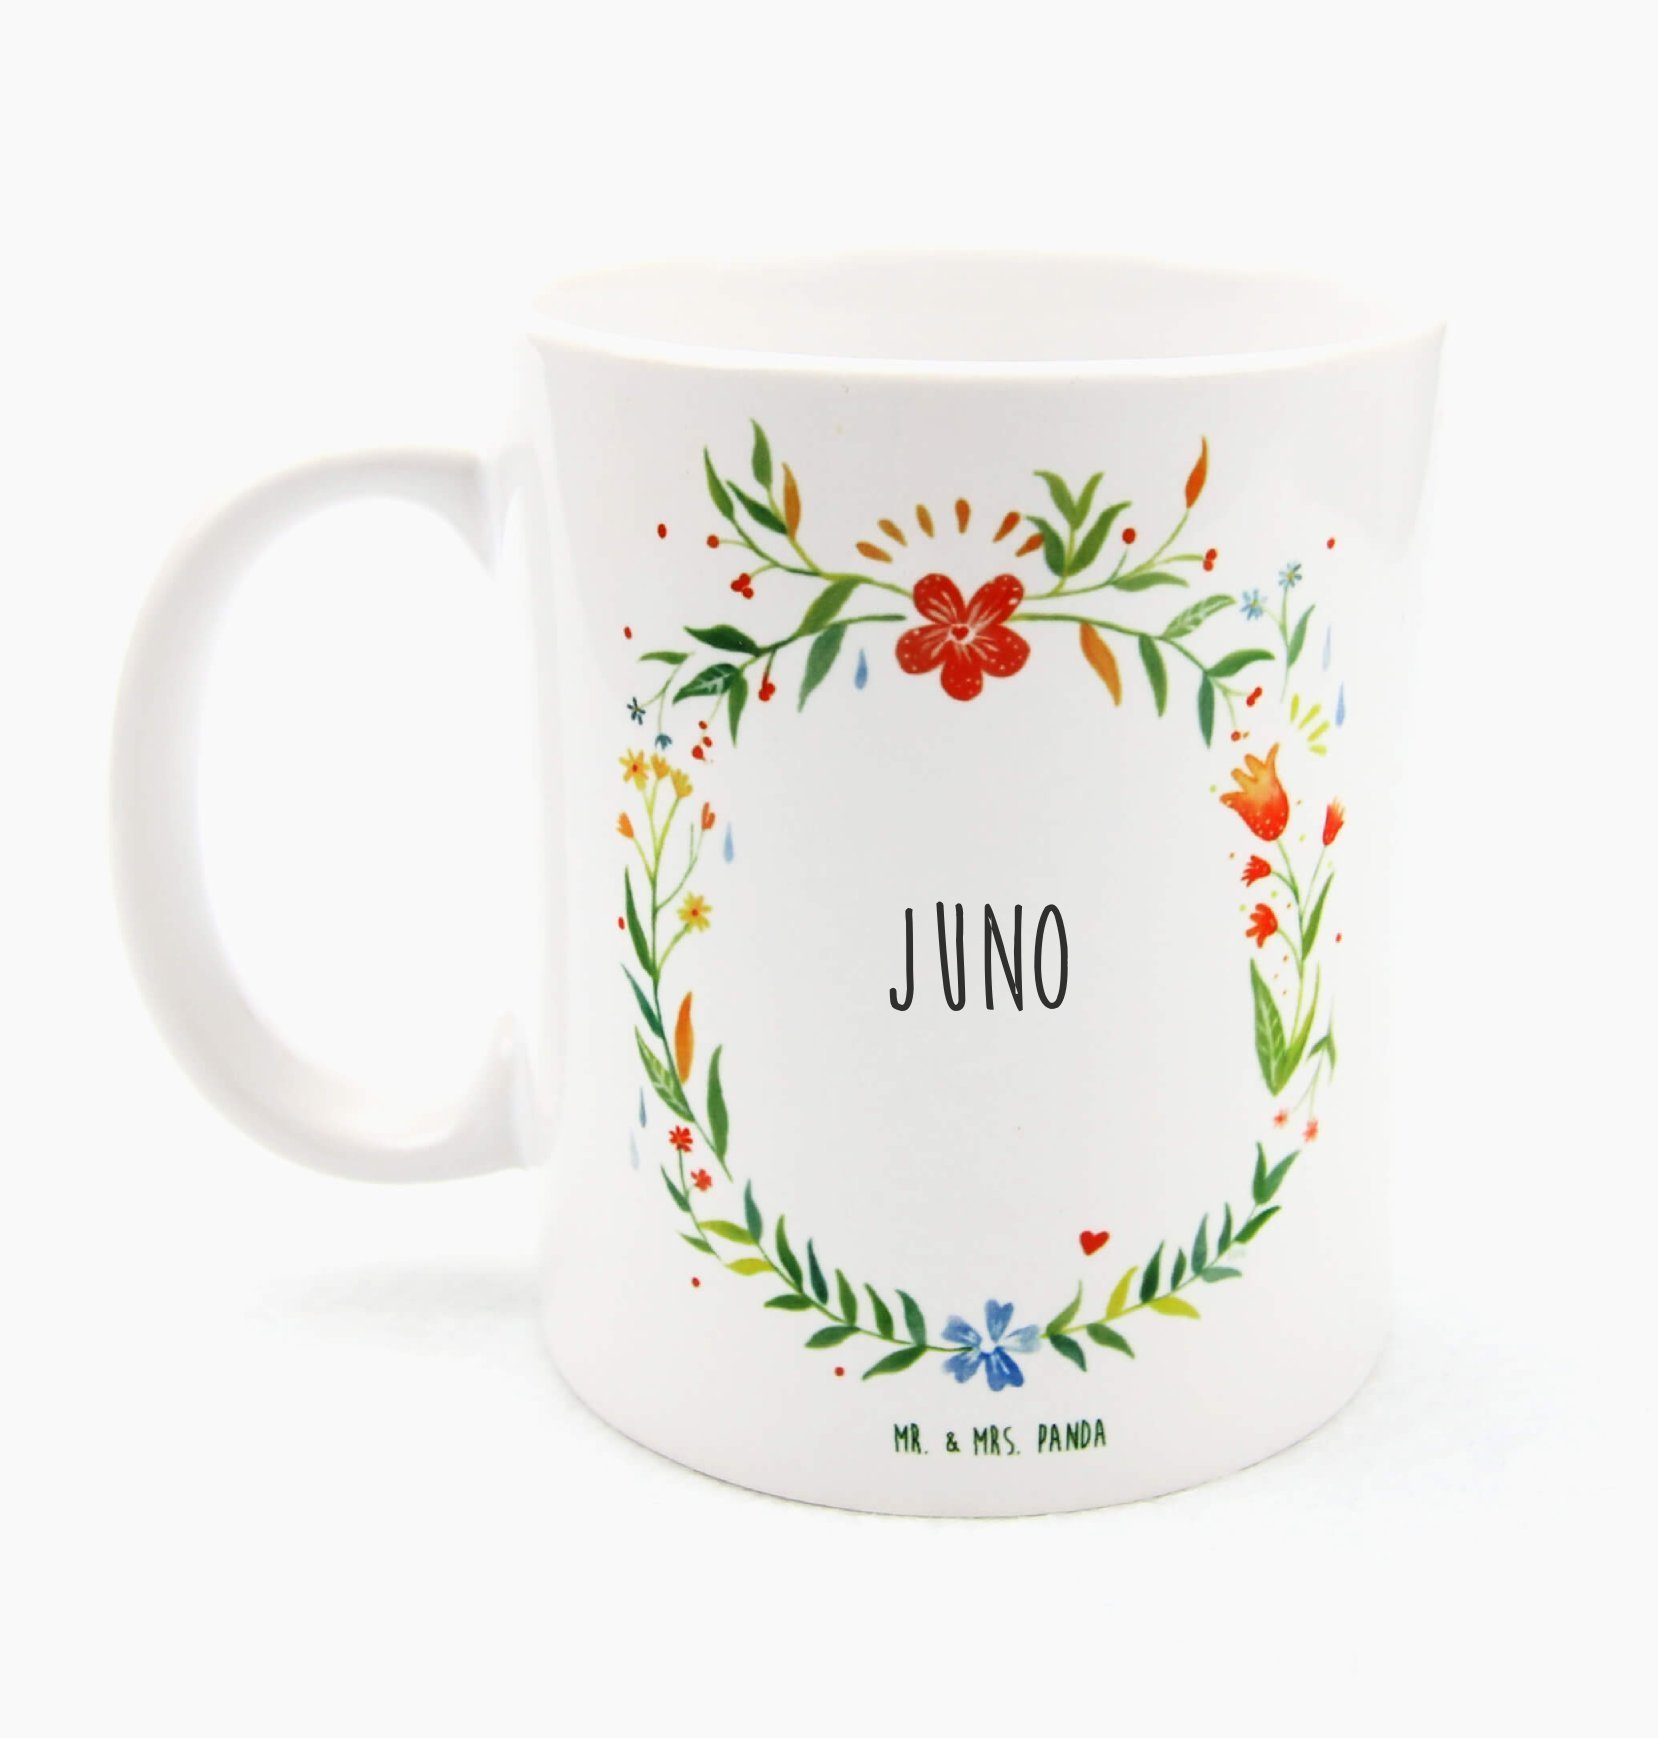 Mr. & Mrs. Panda Tasse Juno - Geschenk, Keramiktasse, Büro Tasse, Porzellantasse, Tasse Moti, Keramik